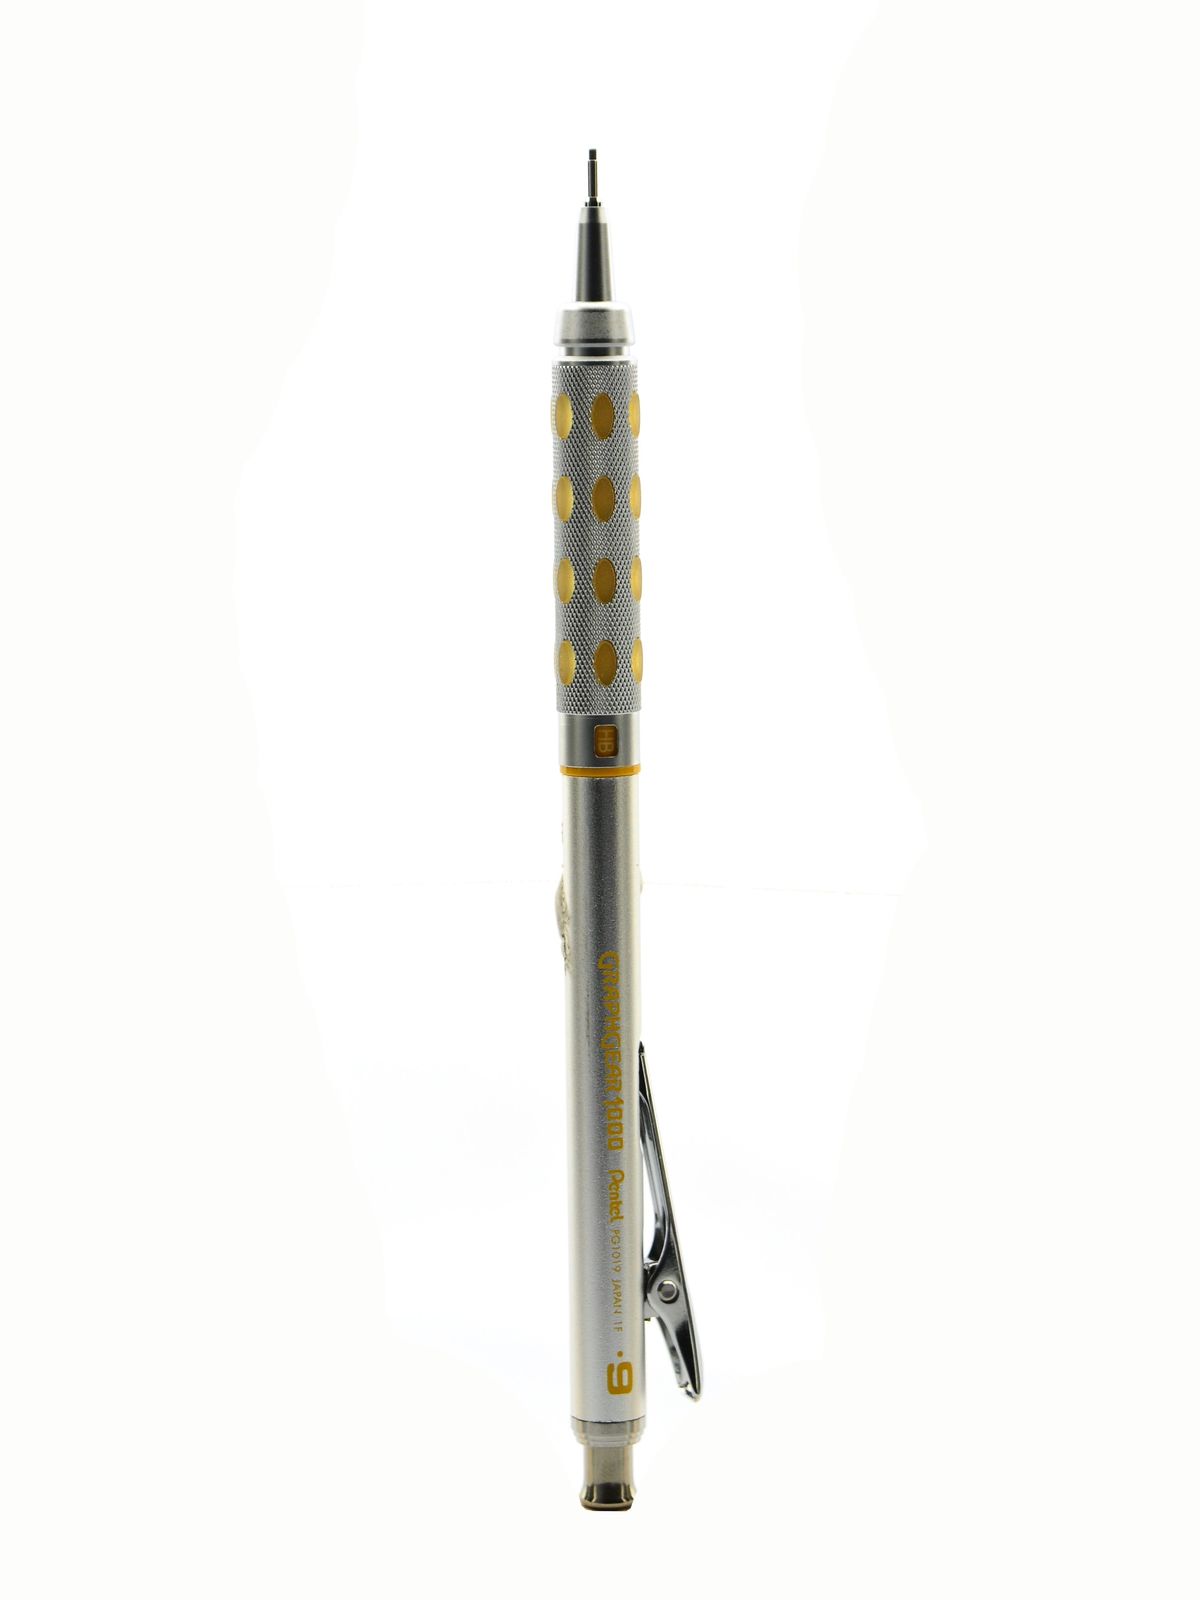 Graph Gear 1000 Mechanical Pencil 0.9 Mm